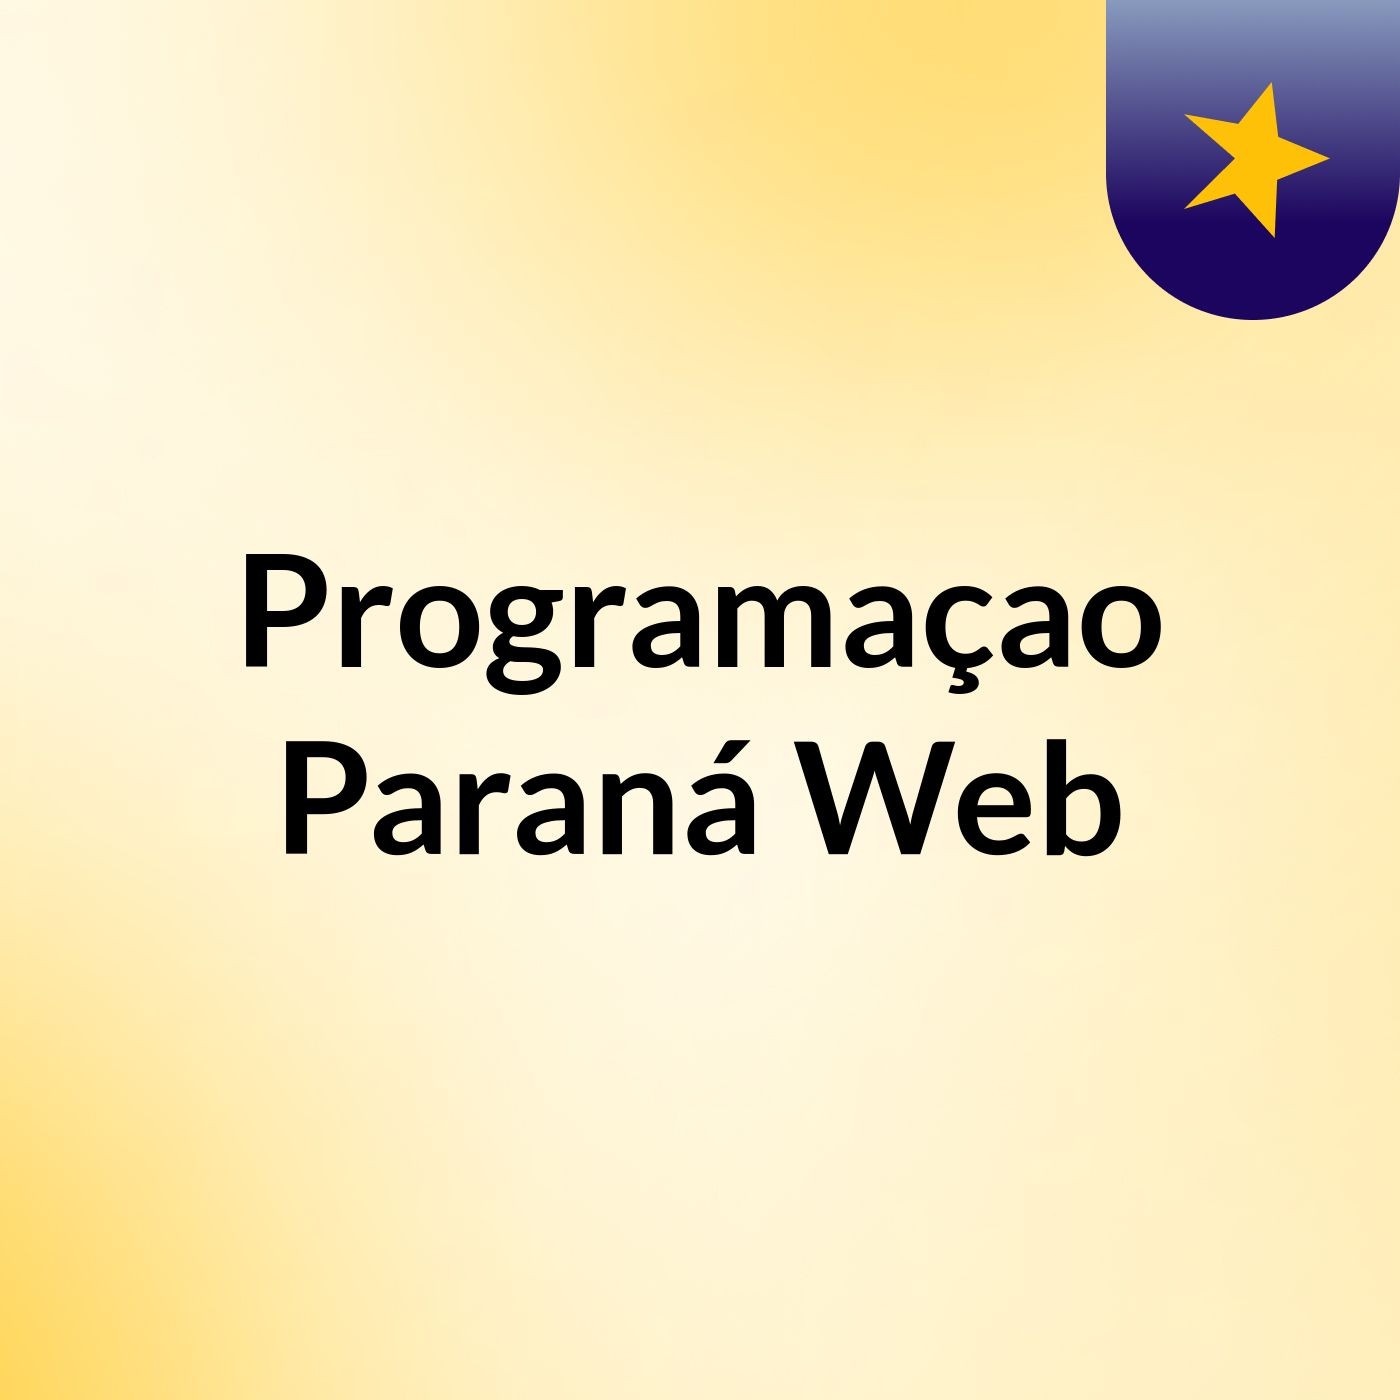 Programaçao Paraná Web